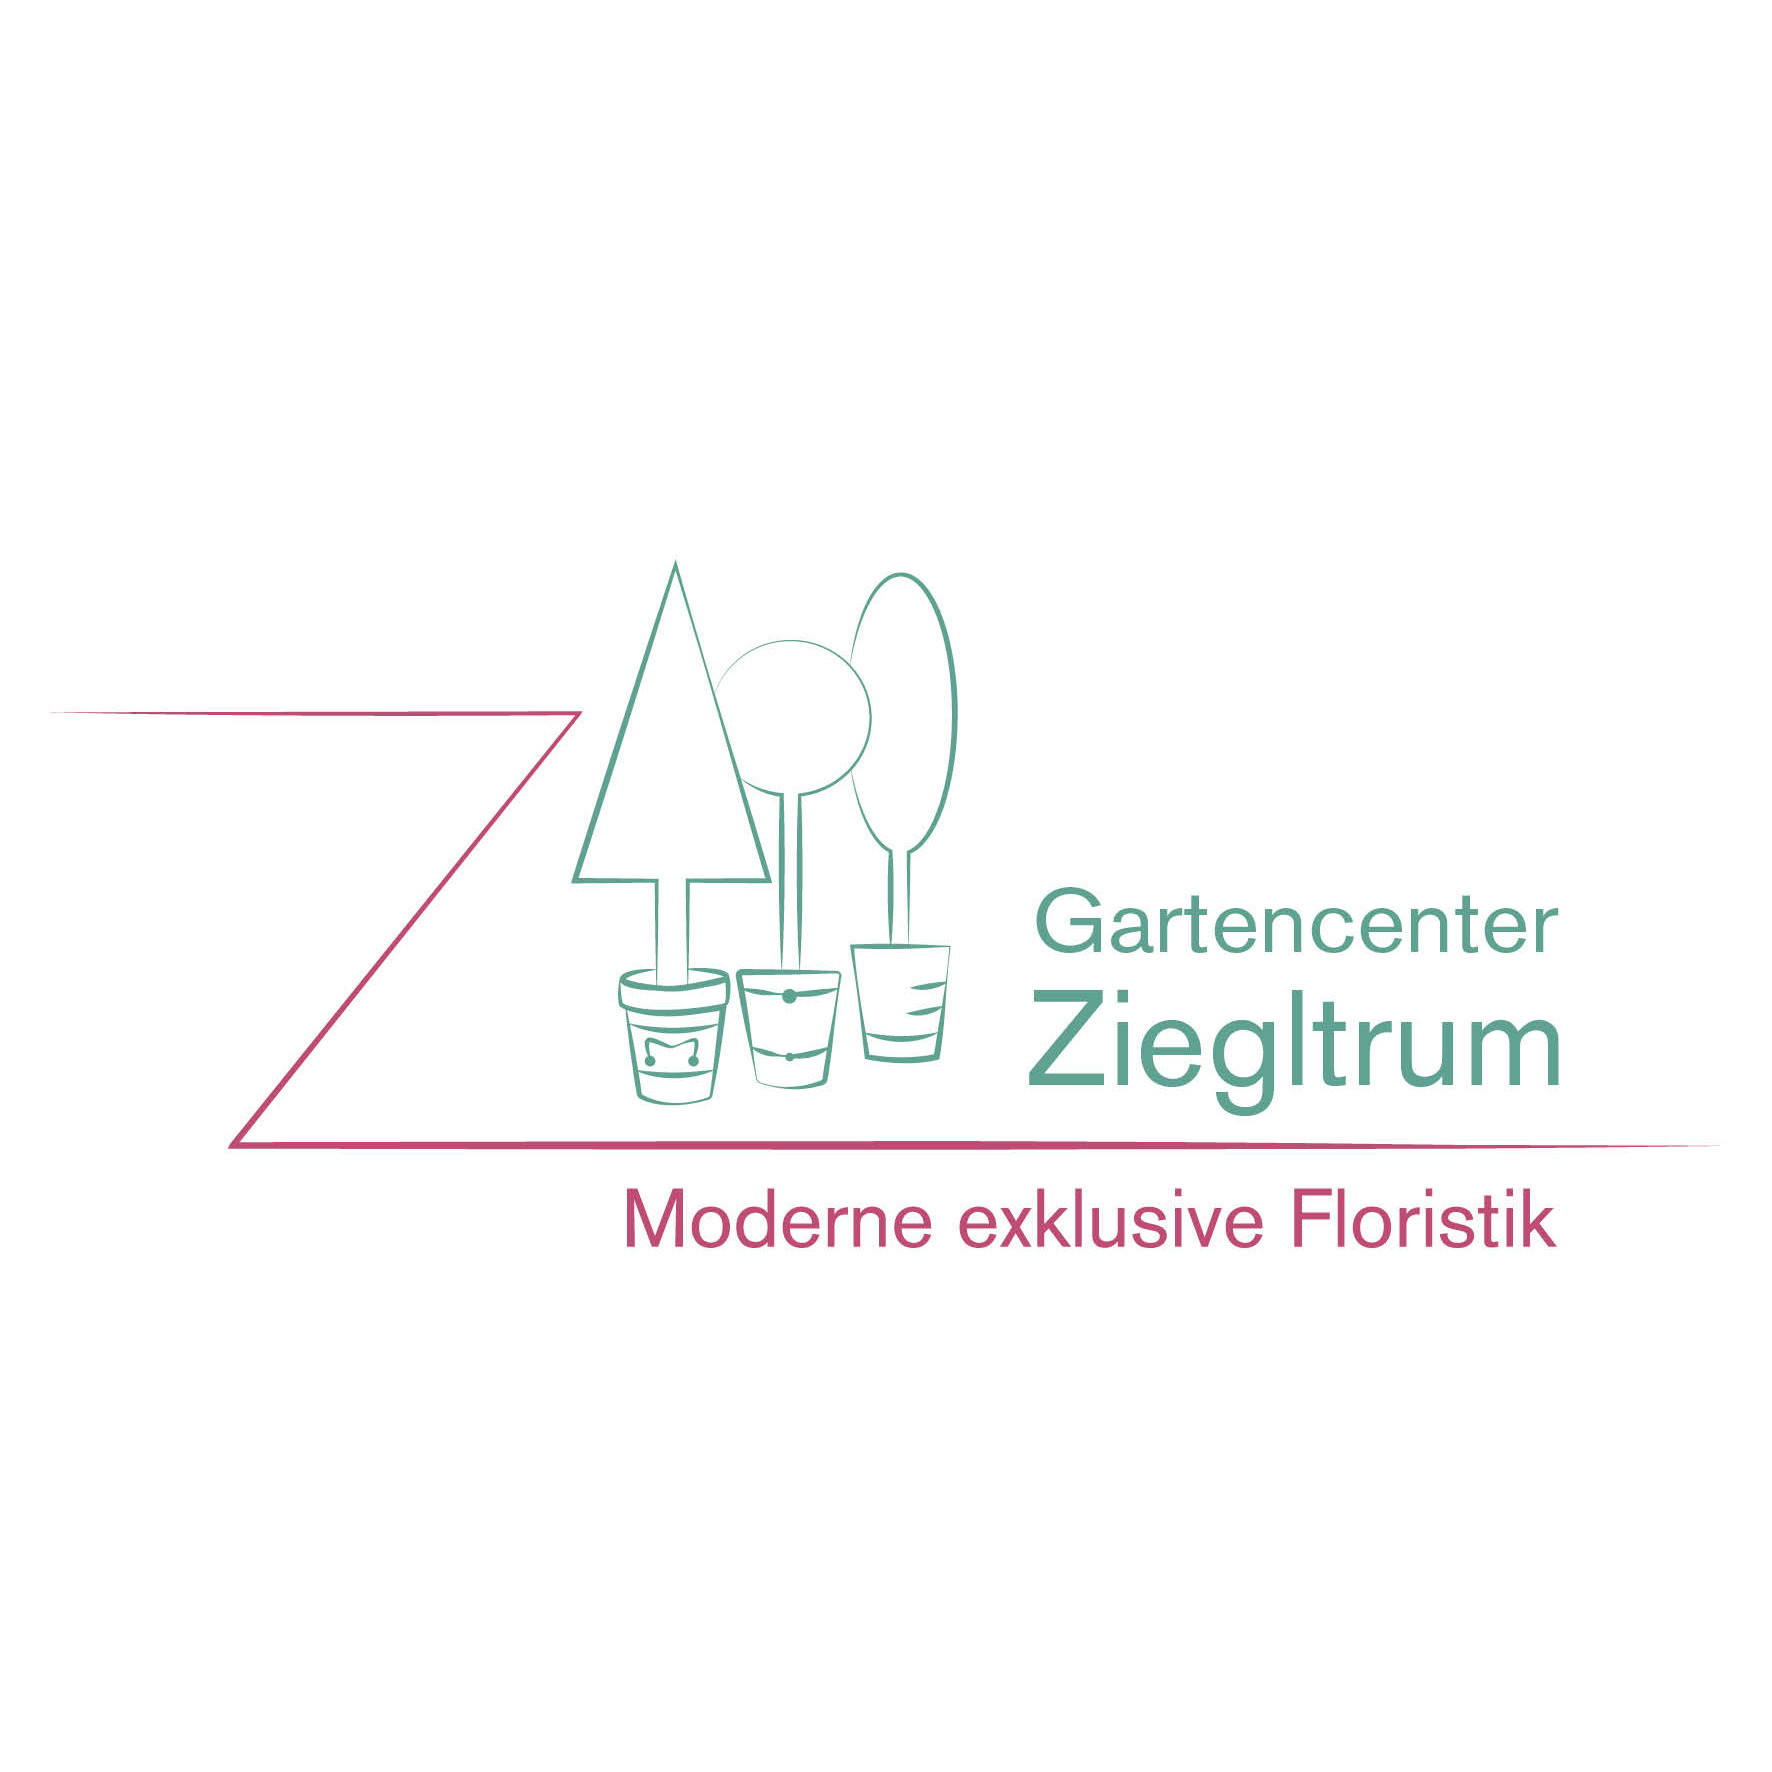 Gartencenter Ziegltrum in Vaterstetten - Logo